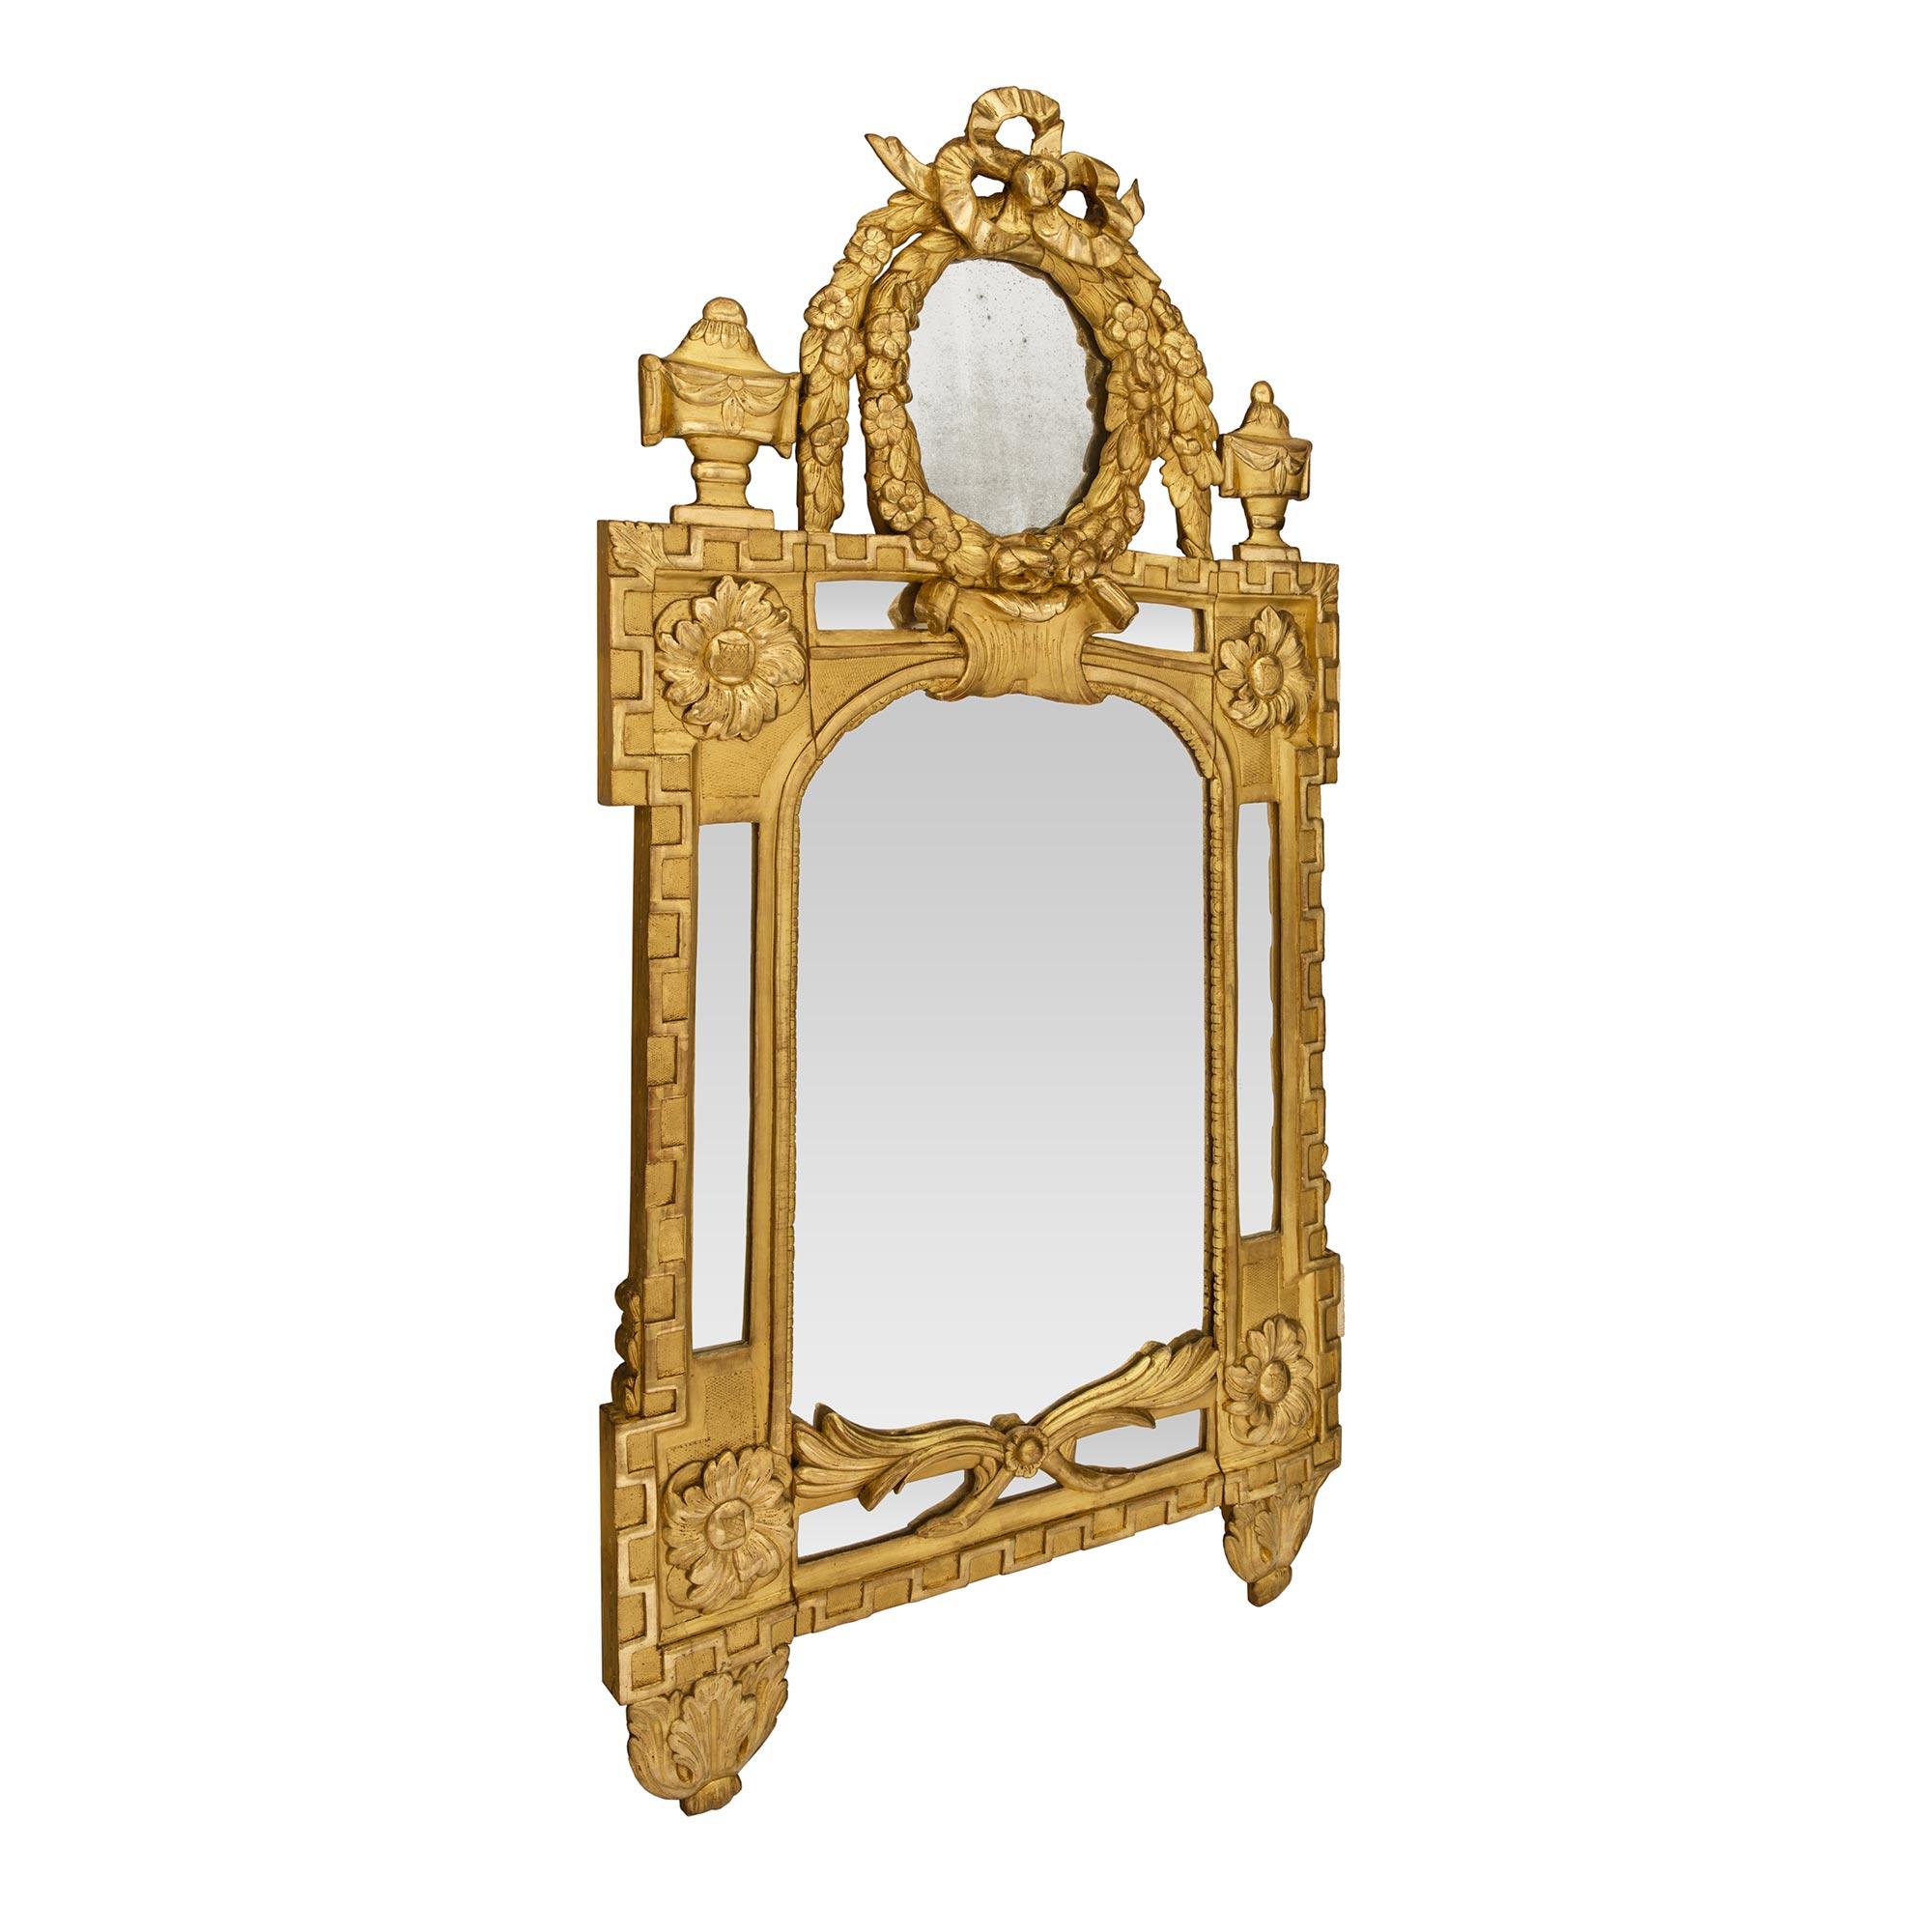 Eine beeindruckende große Französisch Anfang des 19. Jahrhunderts Louis XVI st. doppelt gerahmt Goldholz Spiegel. Die originale zentrale Spiegelplatte ist von einer fein gesprenkelten Bordüre umrahmt. Ein schönes griechisches Schlüsselmuster zieht